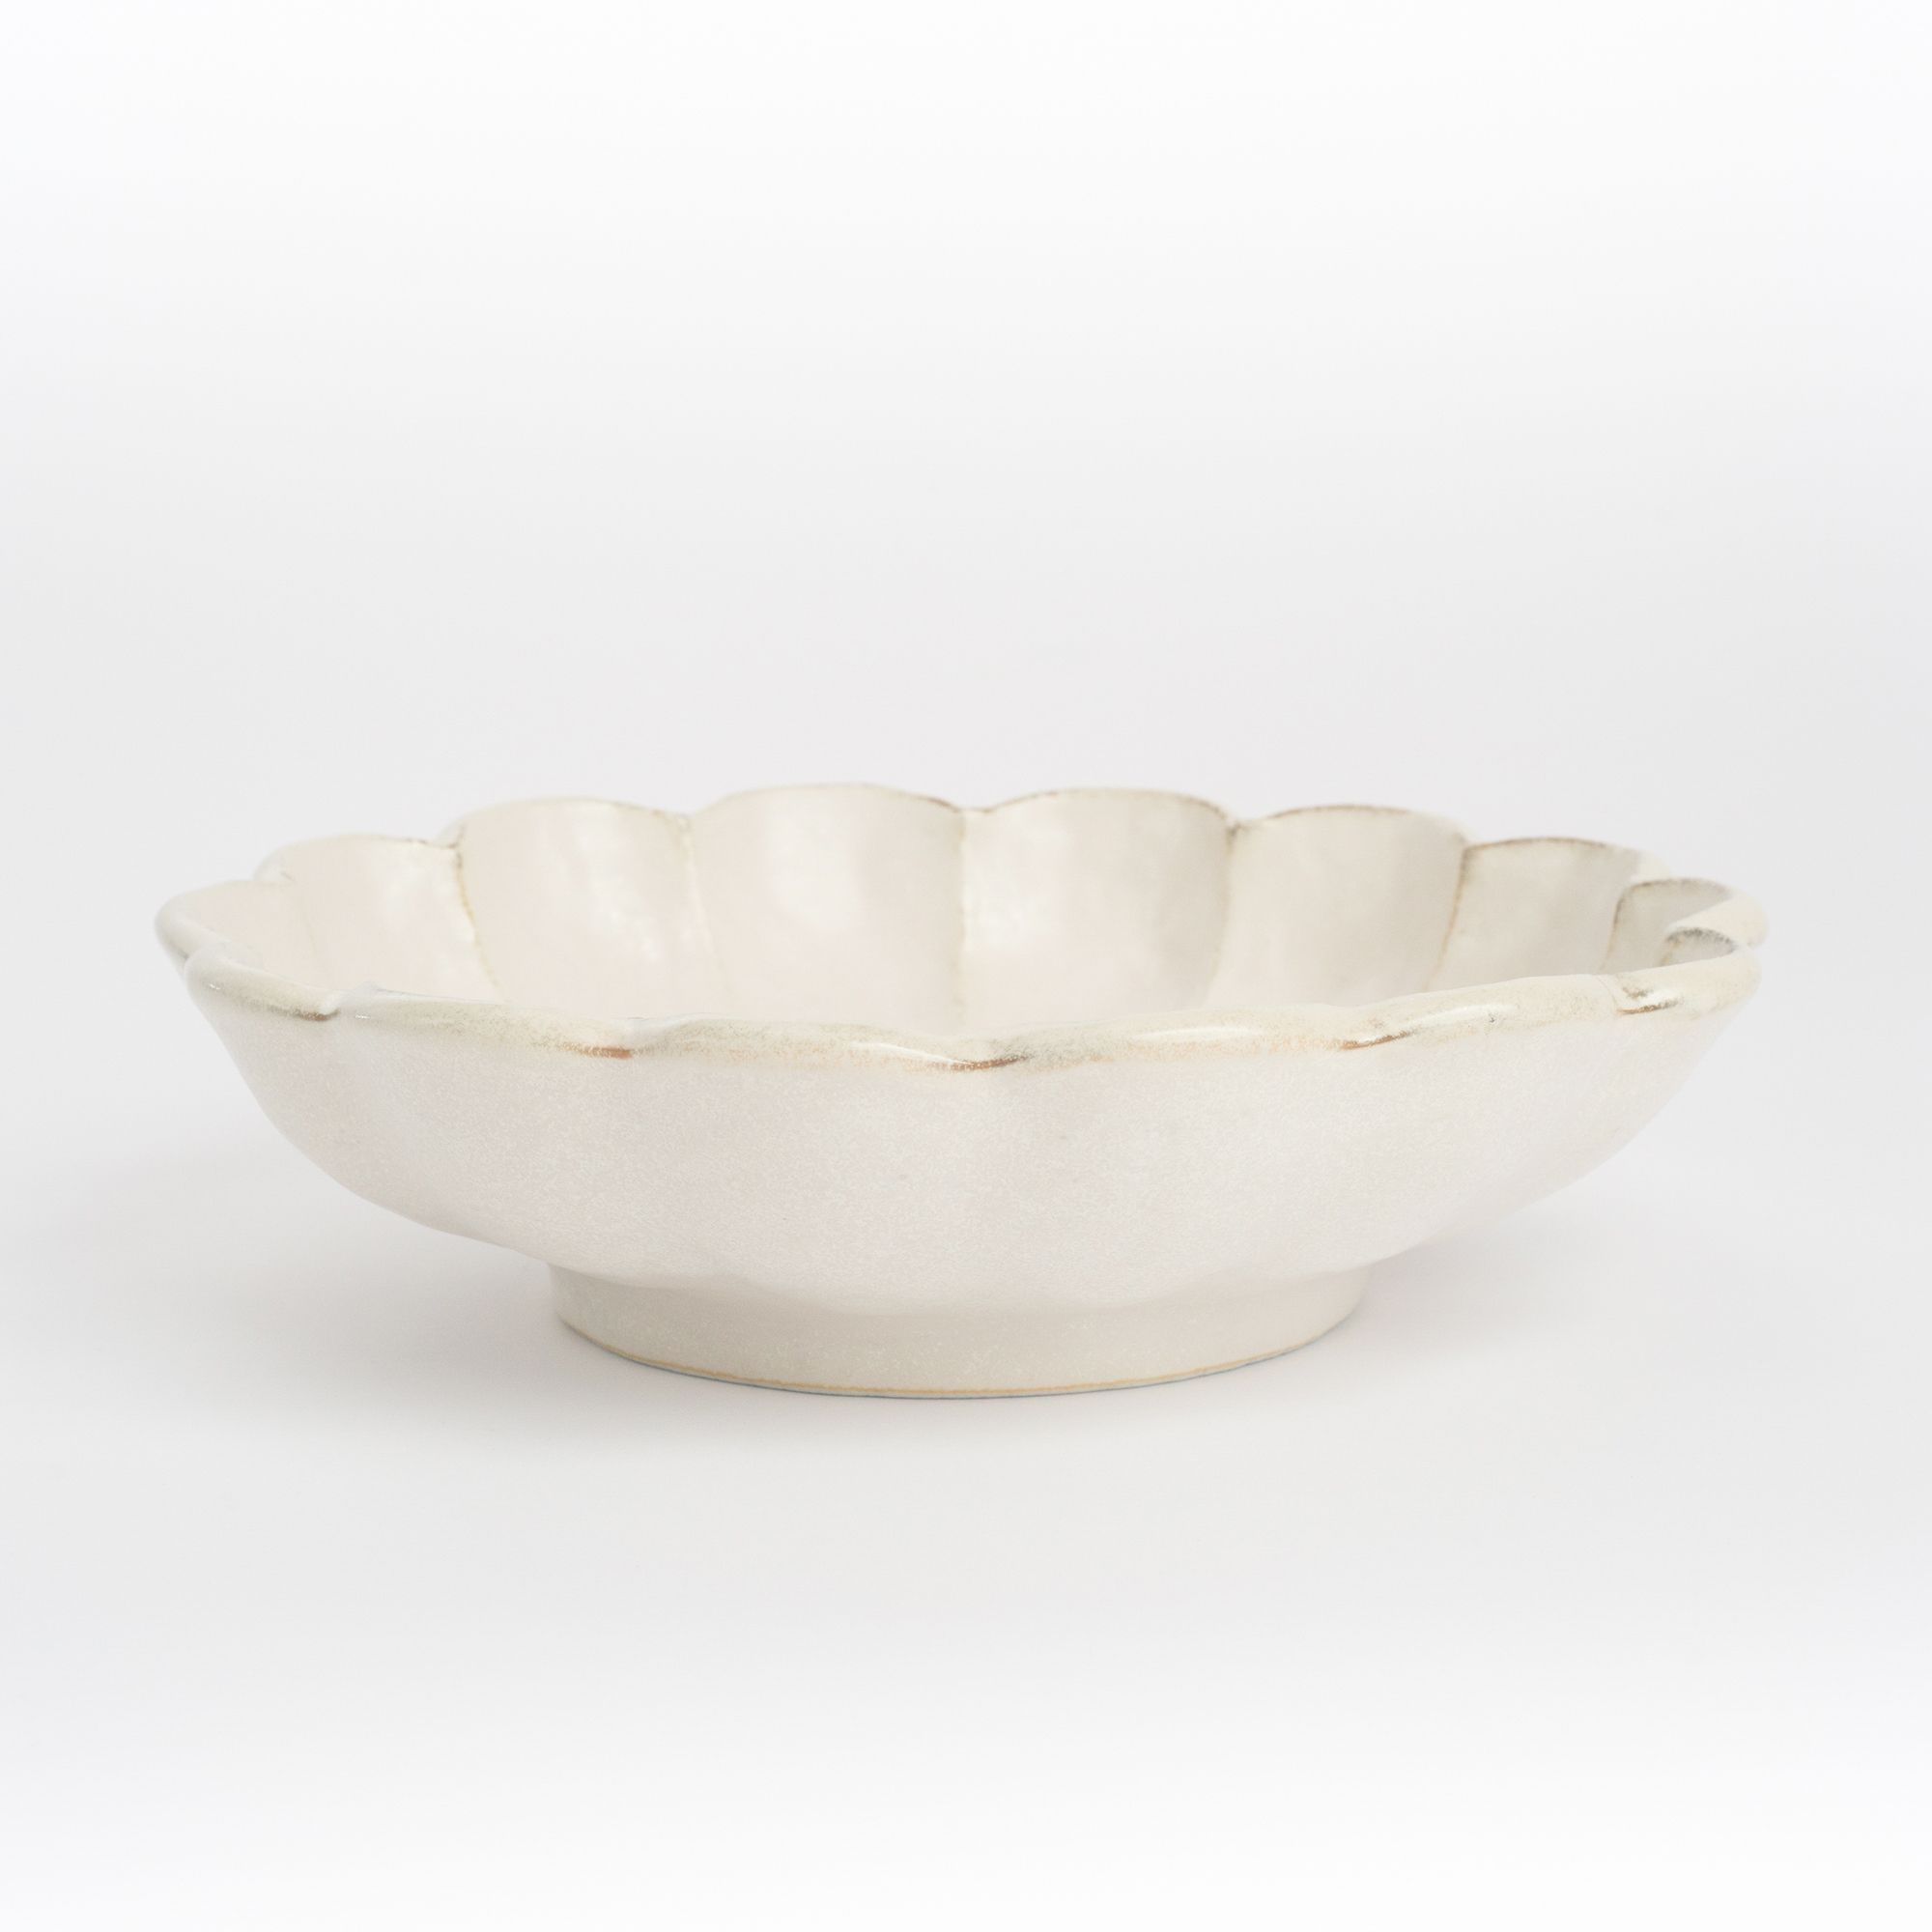 Mino Ware Kohyo Rinka Bowl - 24.5cm